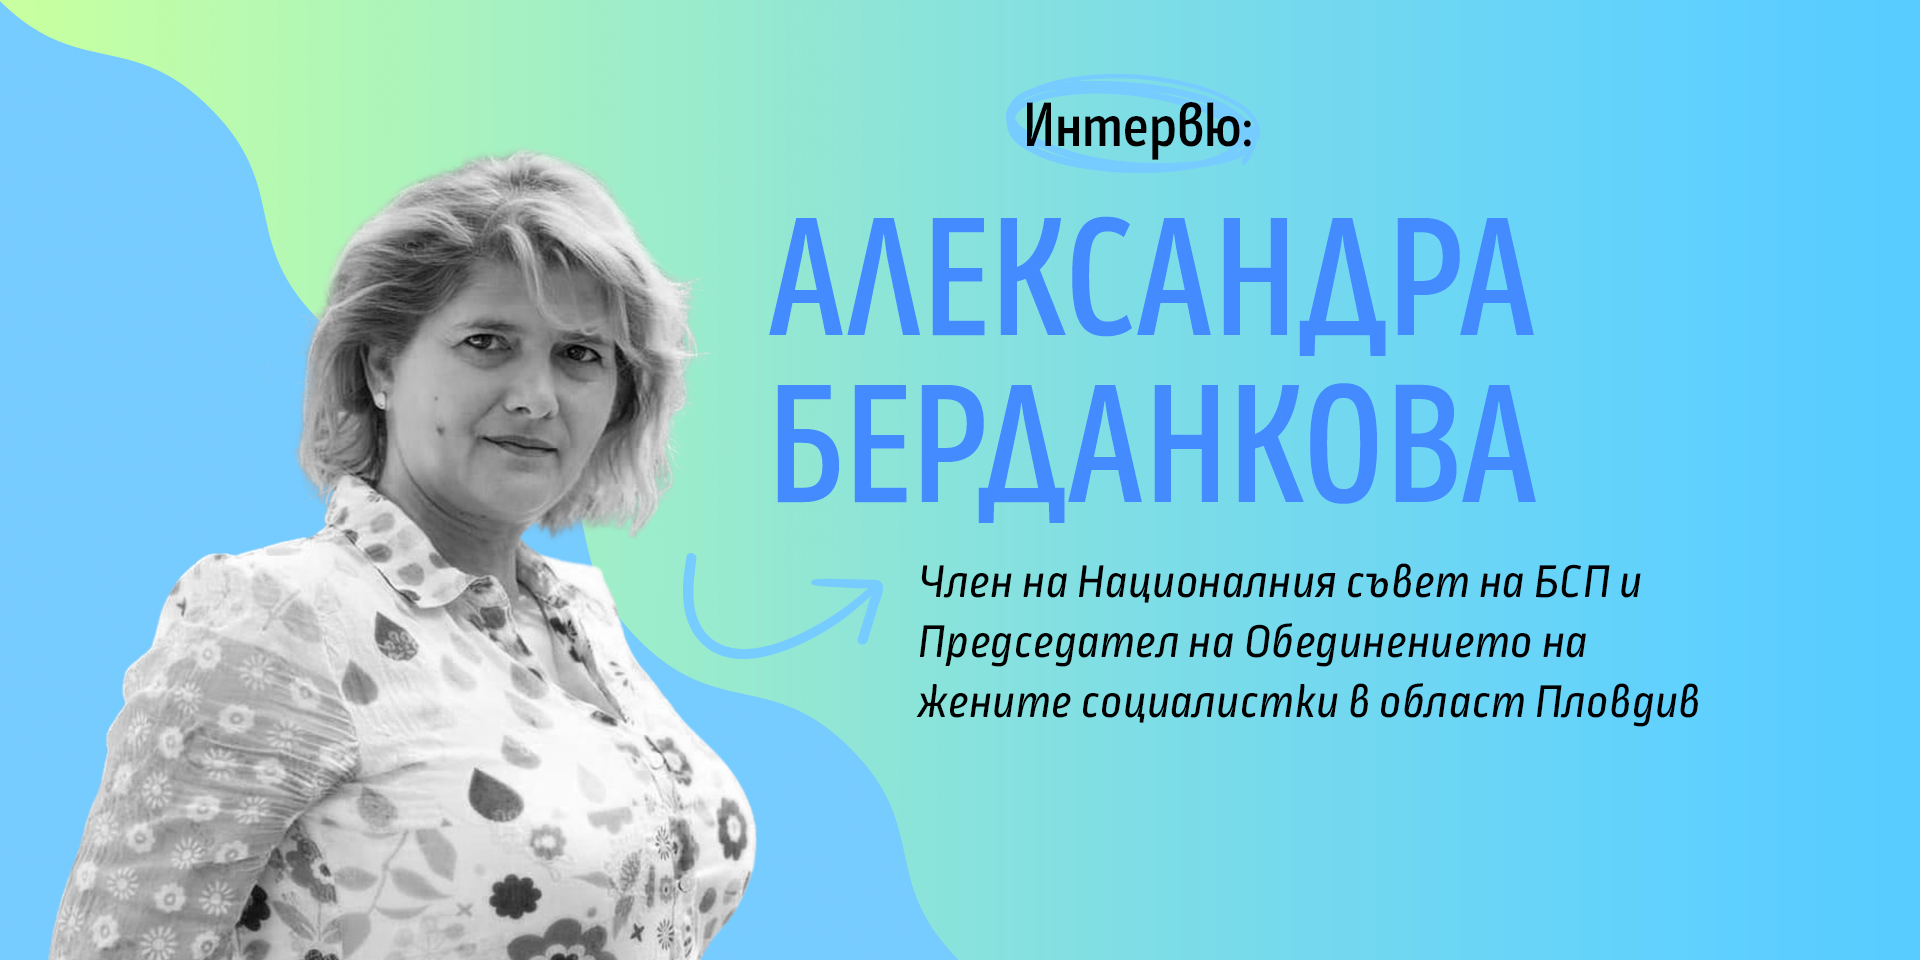 Александра Берданкова: Все още 70% от бюджета на една община идва от бюджета на държавата